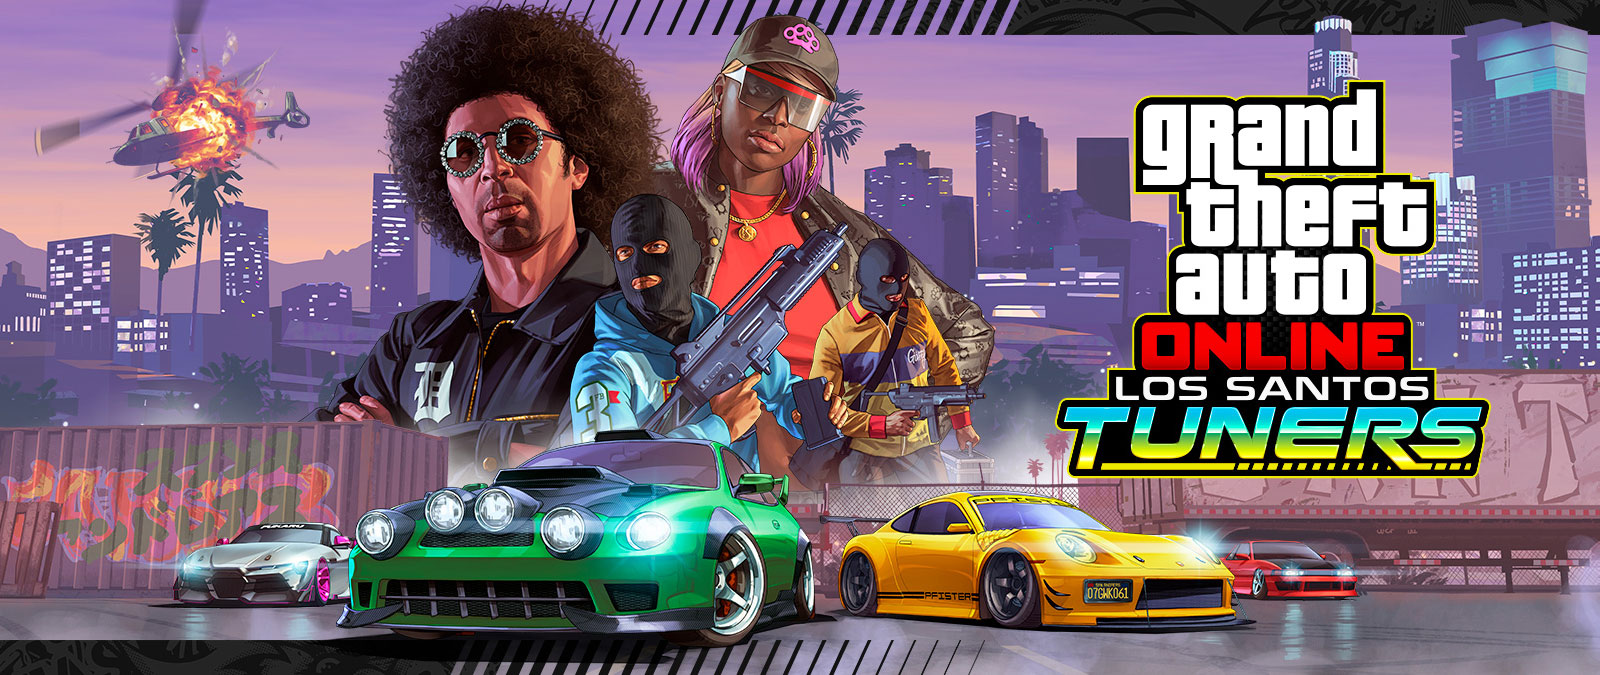 Grand Theft Auto Online, Los Santos Tuners. Quatre personnages posant à l’avant d’un panorama urbain et quatre super voitures en dessous d’eux 